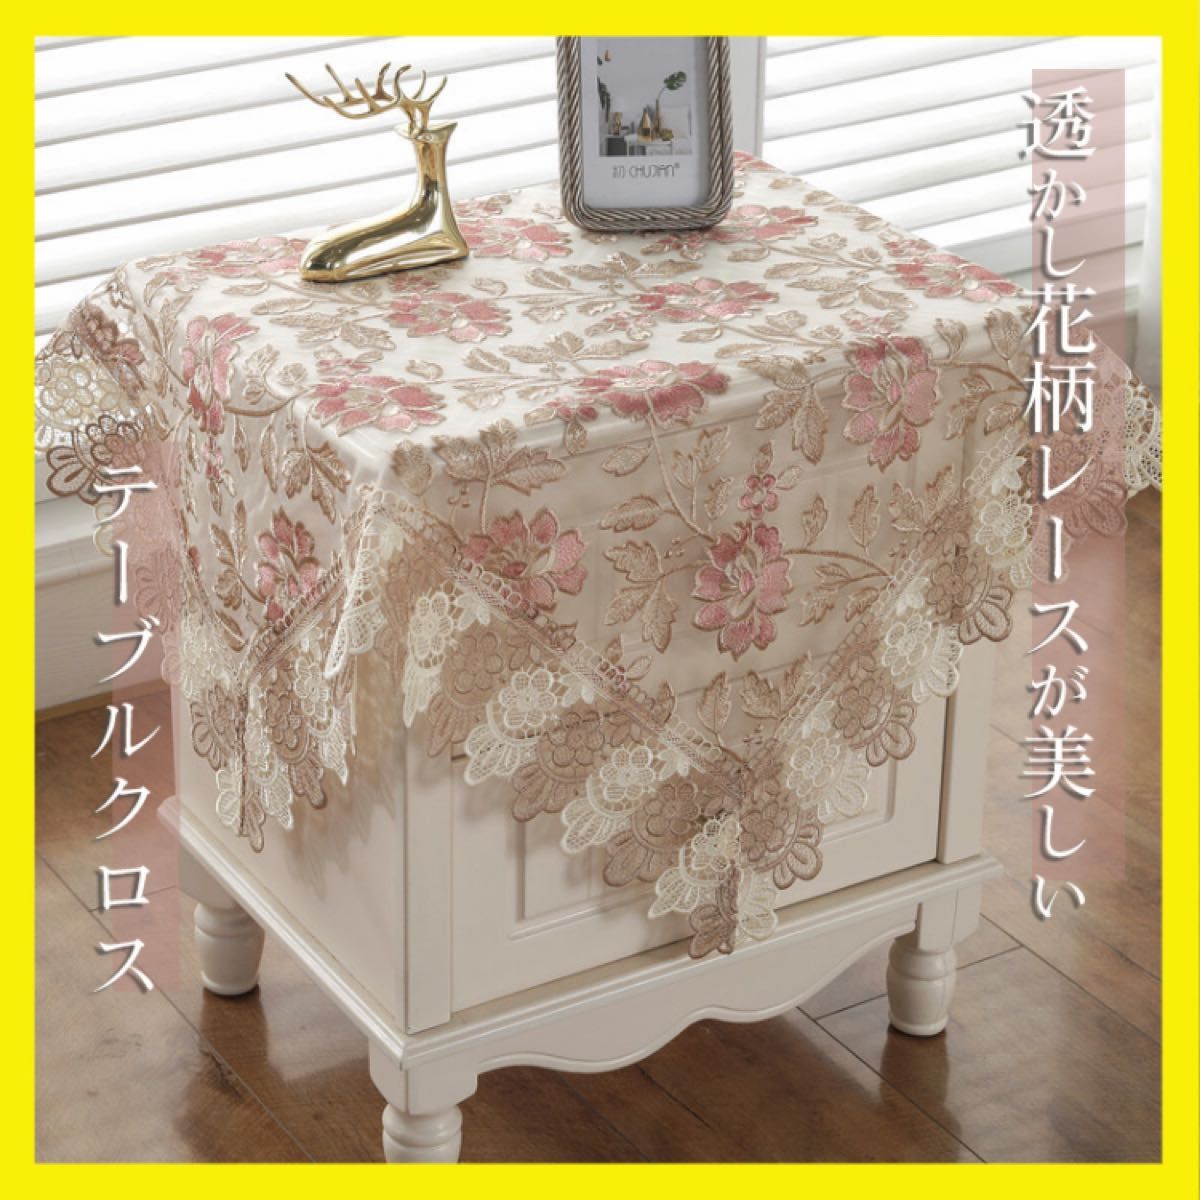 上品 テーブルクロス レースマット 刺繍 花柄 アンティーク テーブルランナー